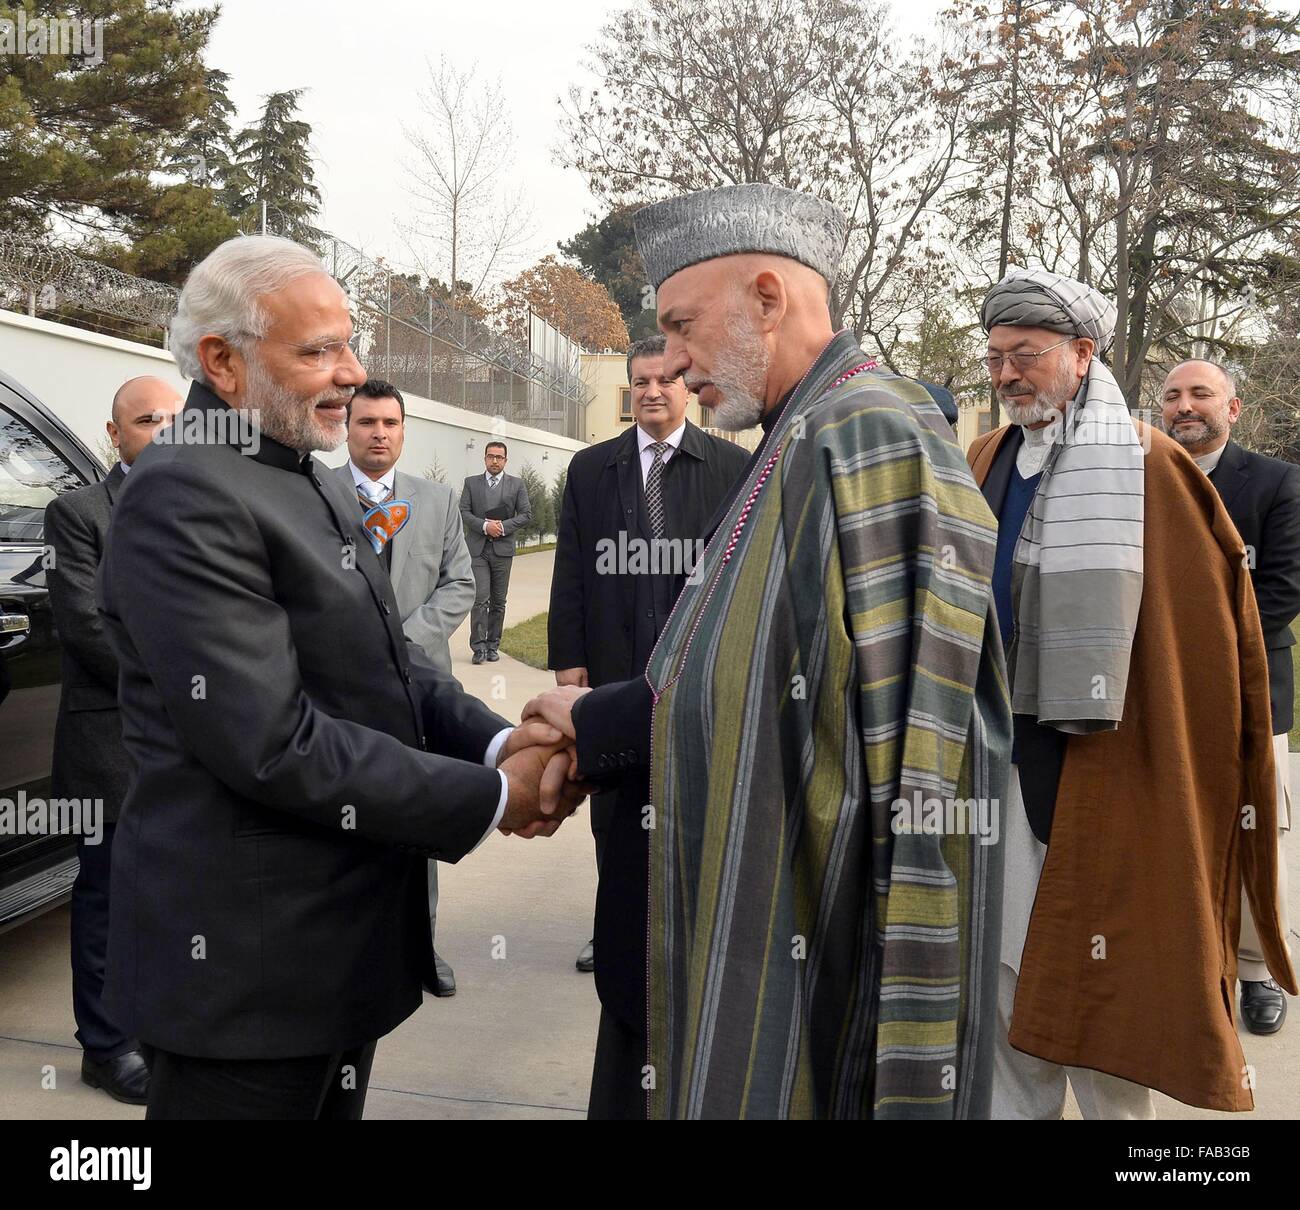 Kabul, Afghanistan. 25. Dezember 2015. Der indische Premierminister Narendra Modi, links, wird vom ehemaligen Präsidenten Afghanistans Hamid Karzai, rechts, bei seiner Ankunft am 25. Dezember 2015 in Kabul, Afghanistan. Modi hielt auf dem Heimweg von einem Besuch in Moskau in Afghanistan an. Stockfoto